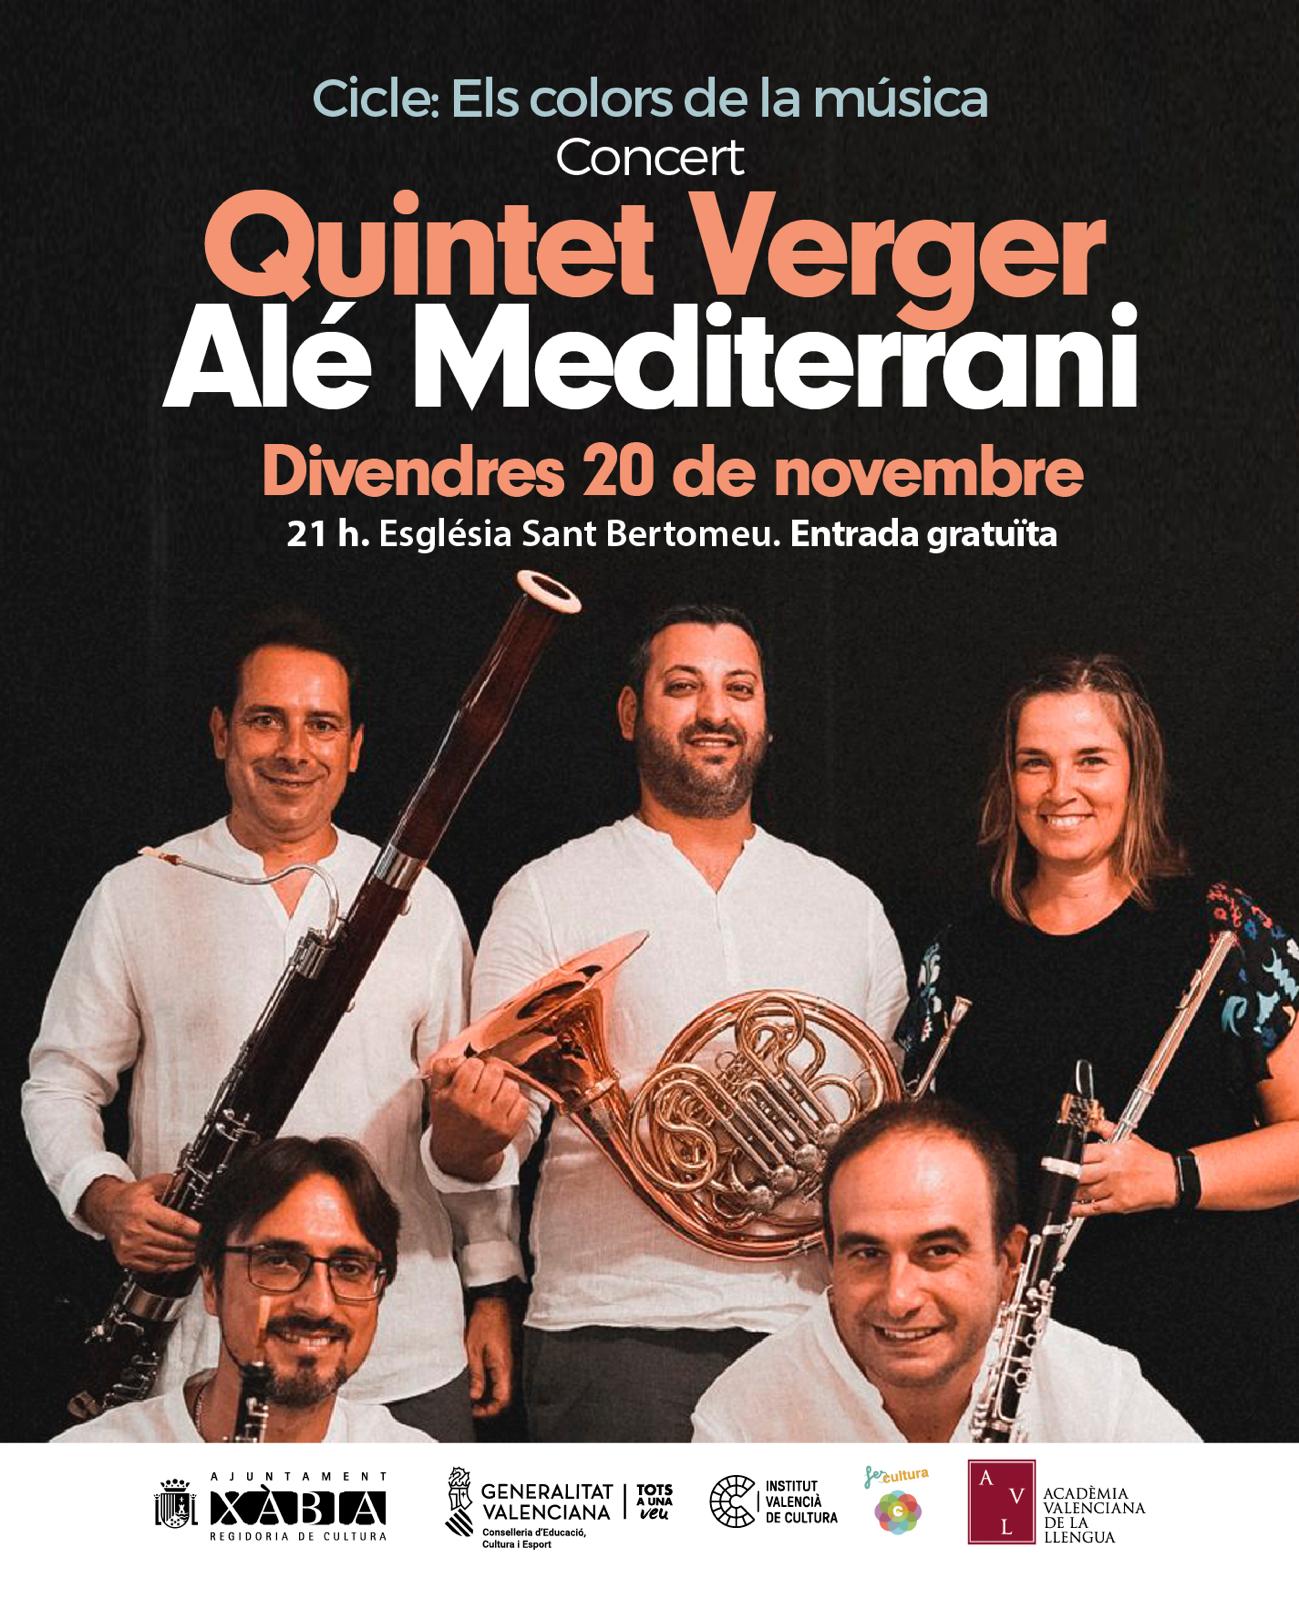 Quintet Verger